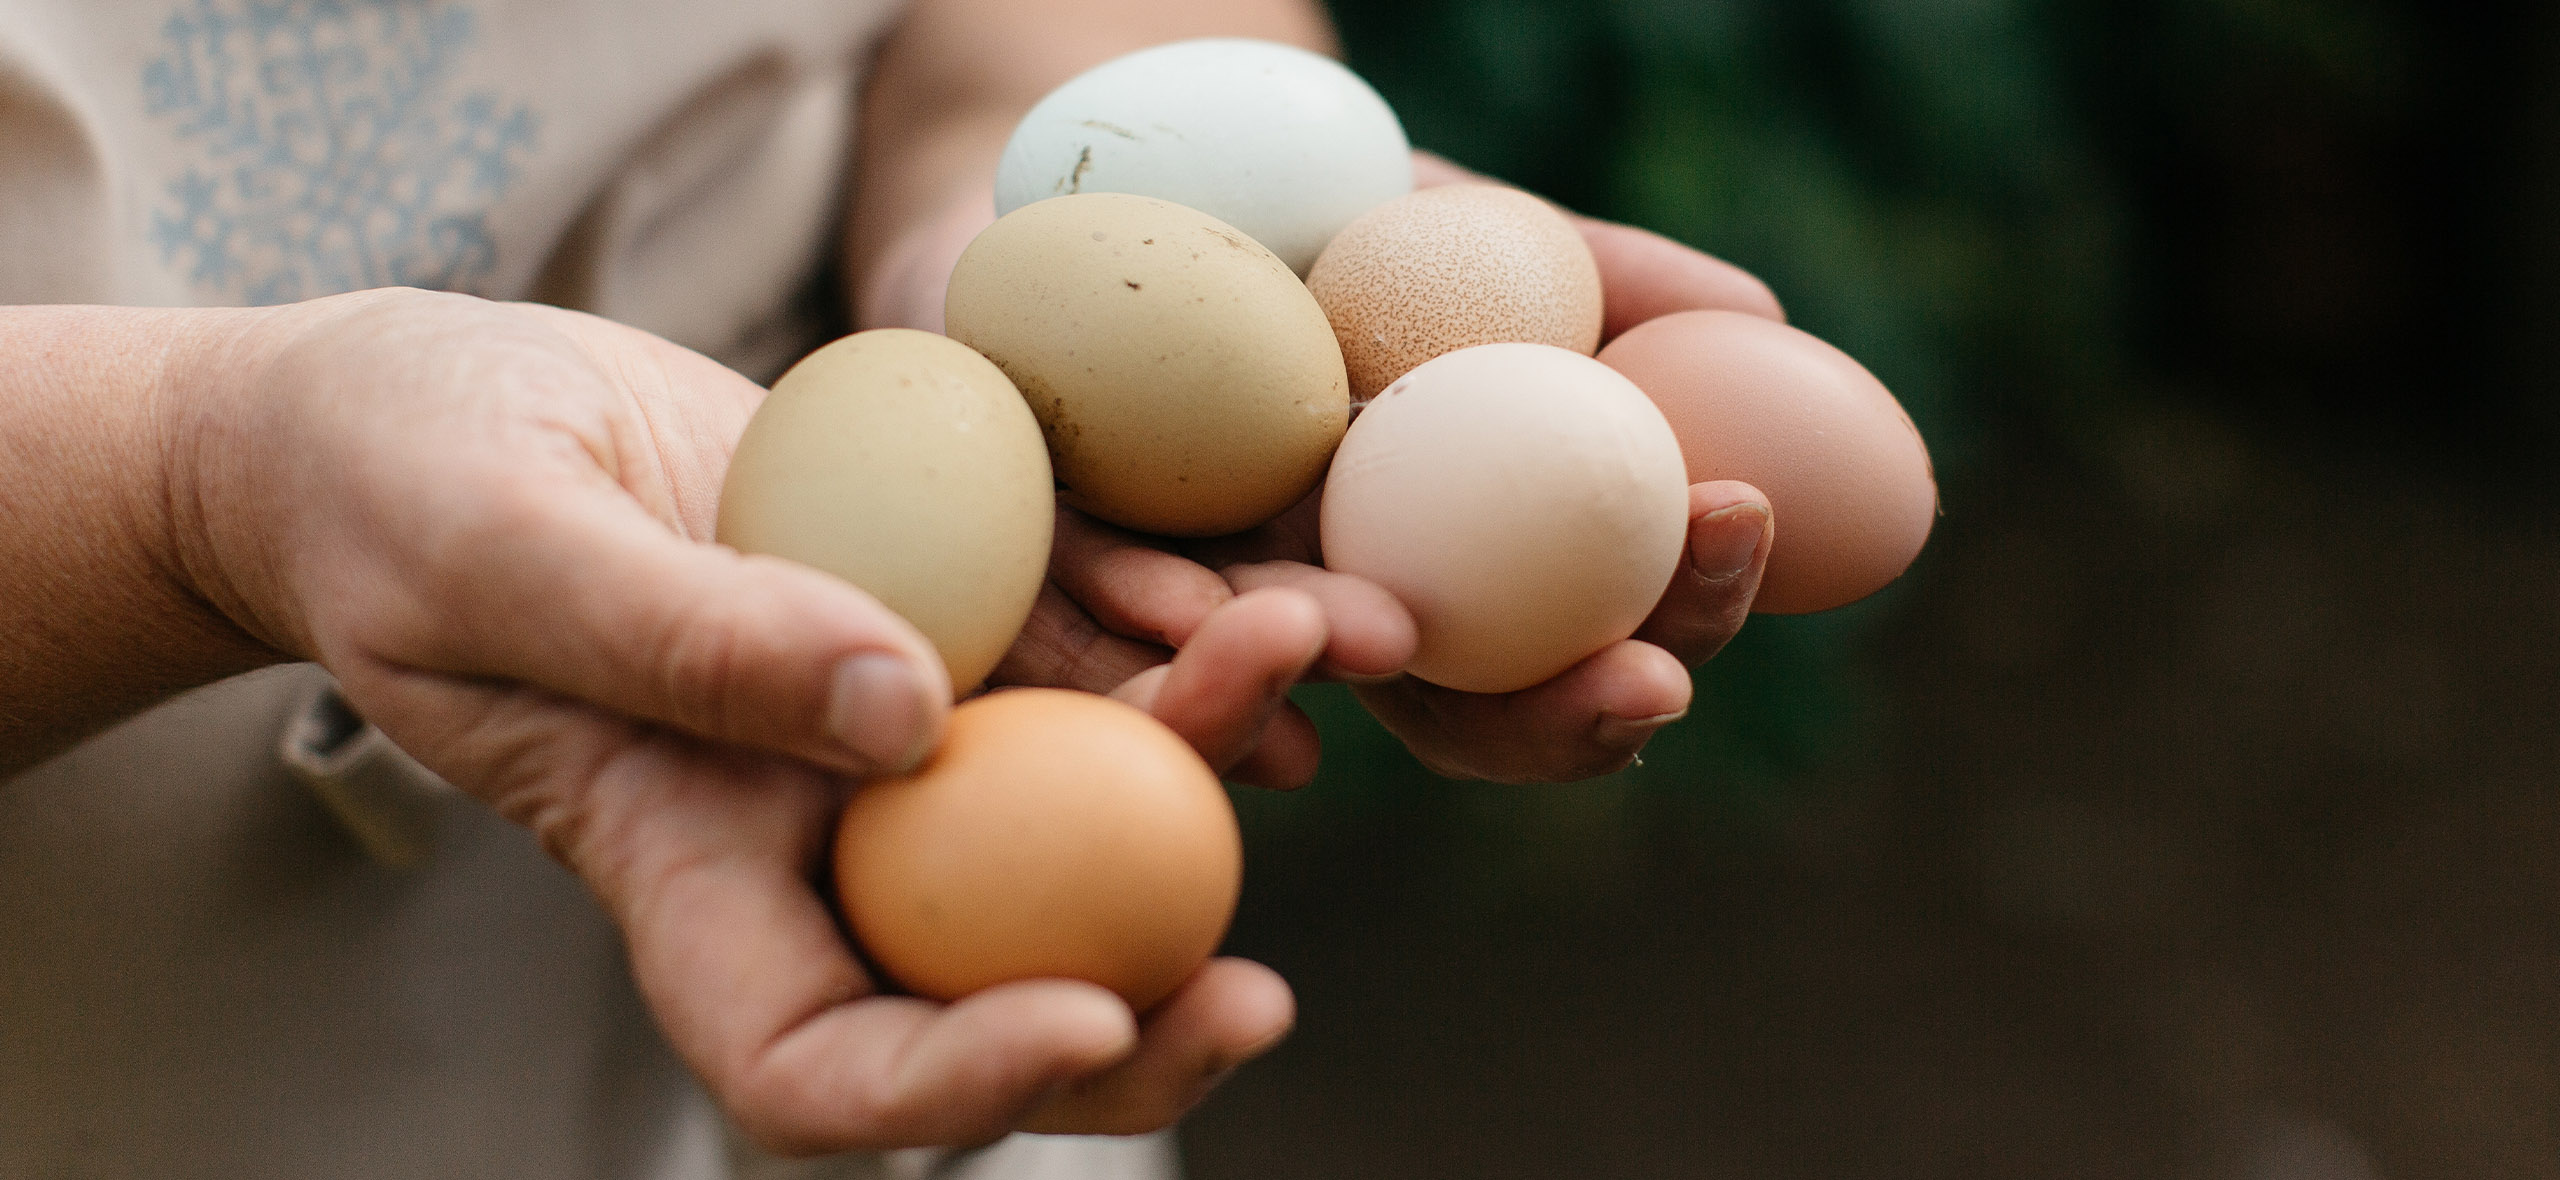 Раньше варила яйца неправильно. Как сварить яйца вкрутую с ярким желтком | ЧТО ГОТОВИТЬ | Дзен